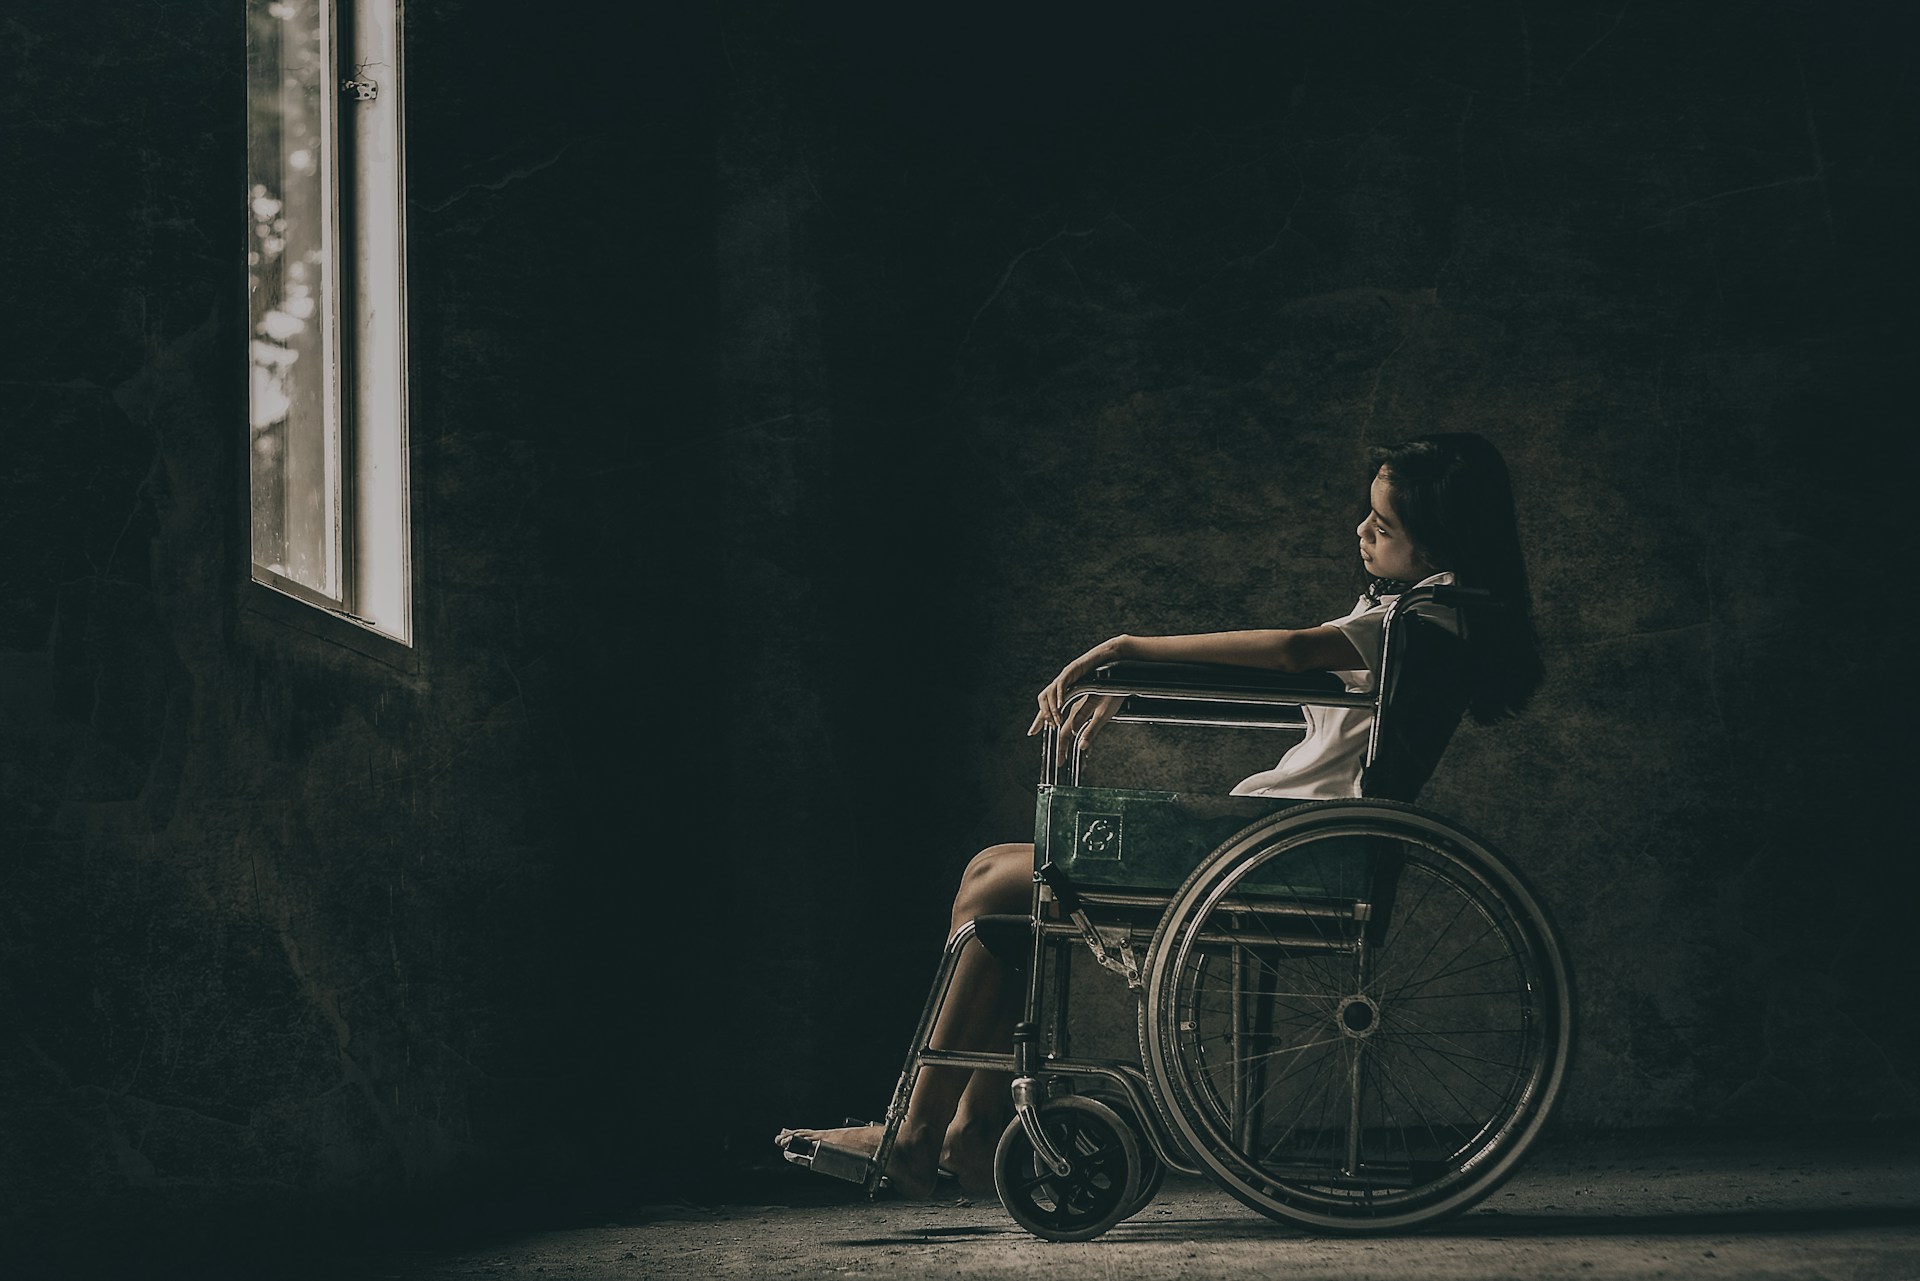 Jeune fille assise dans un fauteuil roulant, la tête penchée, nostalgique et dépitée, face à une fenêtre ouverte sur l'extérieur vers lequel elle ne peut plus courir.